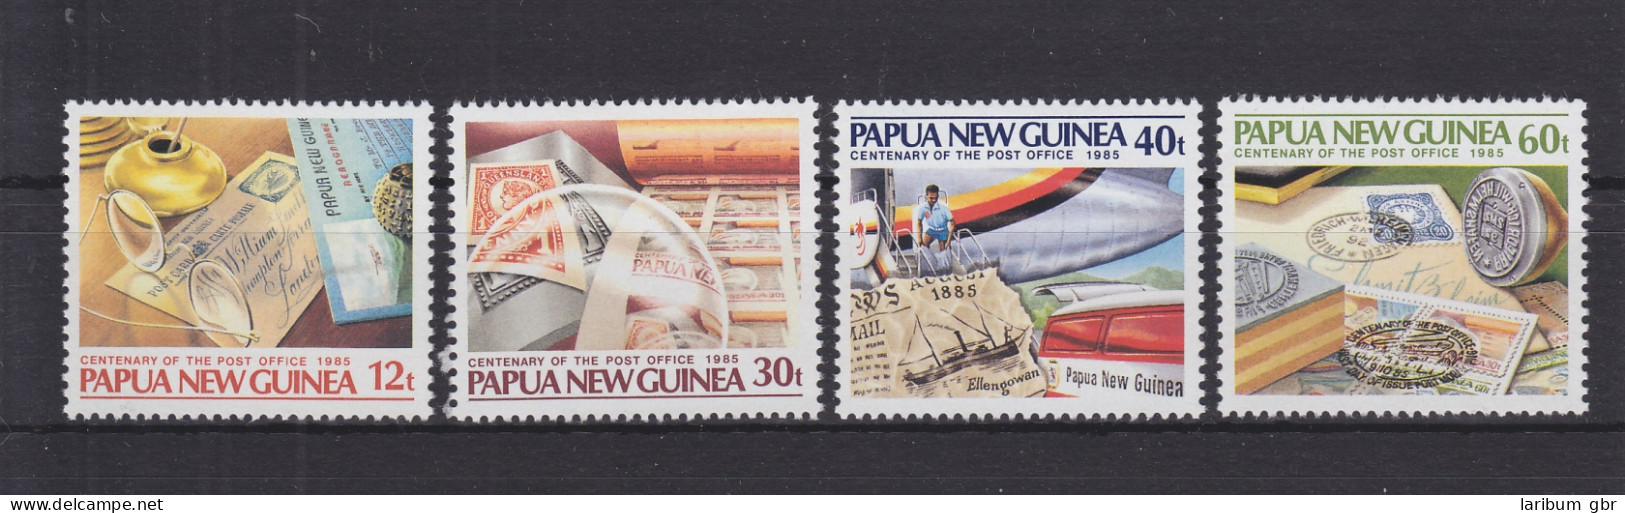 Papua-Neuguinea 504-507 Postfrisch 100 Jahre Postdienst, MNH #GE275 - Papoea-Nieuw-Guinea